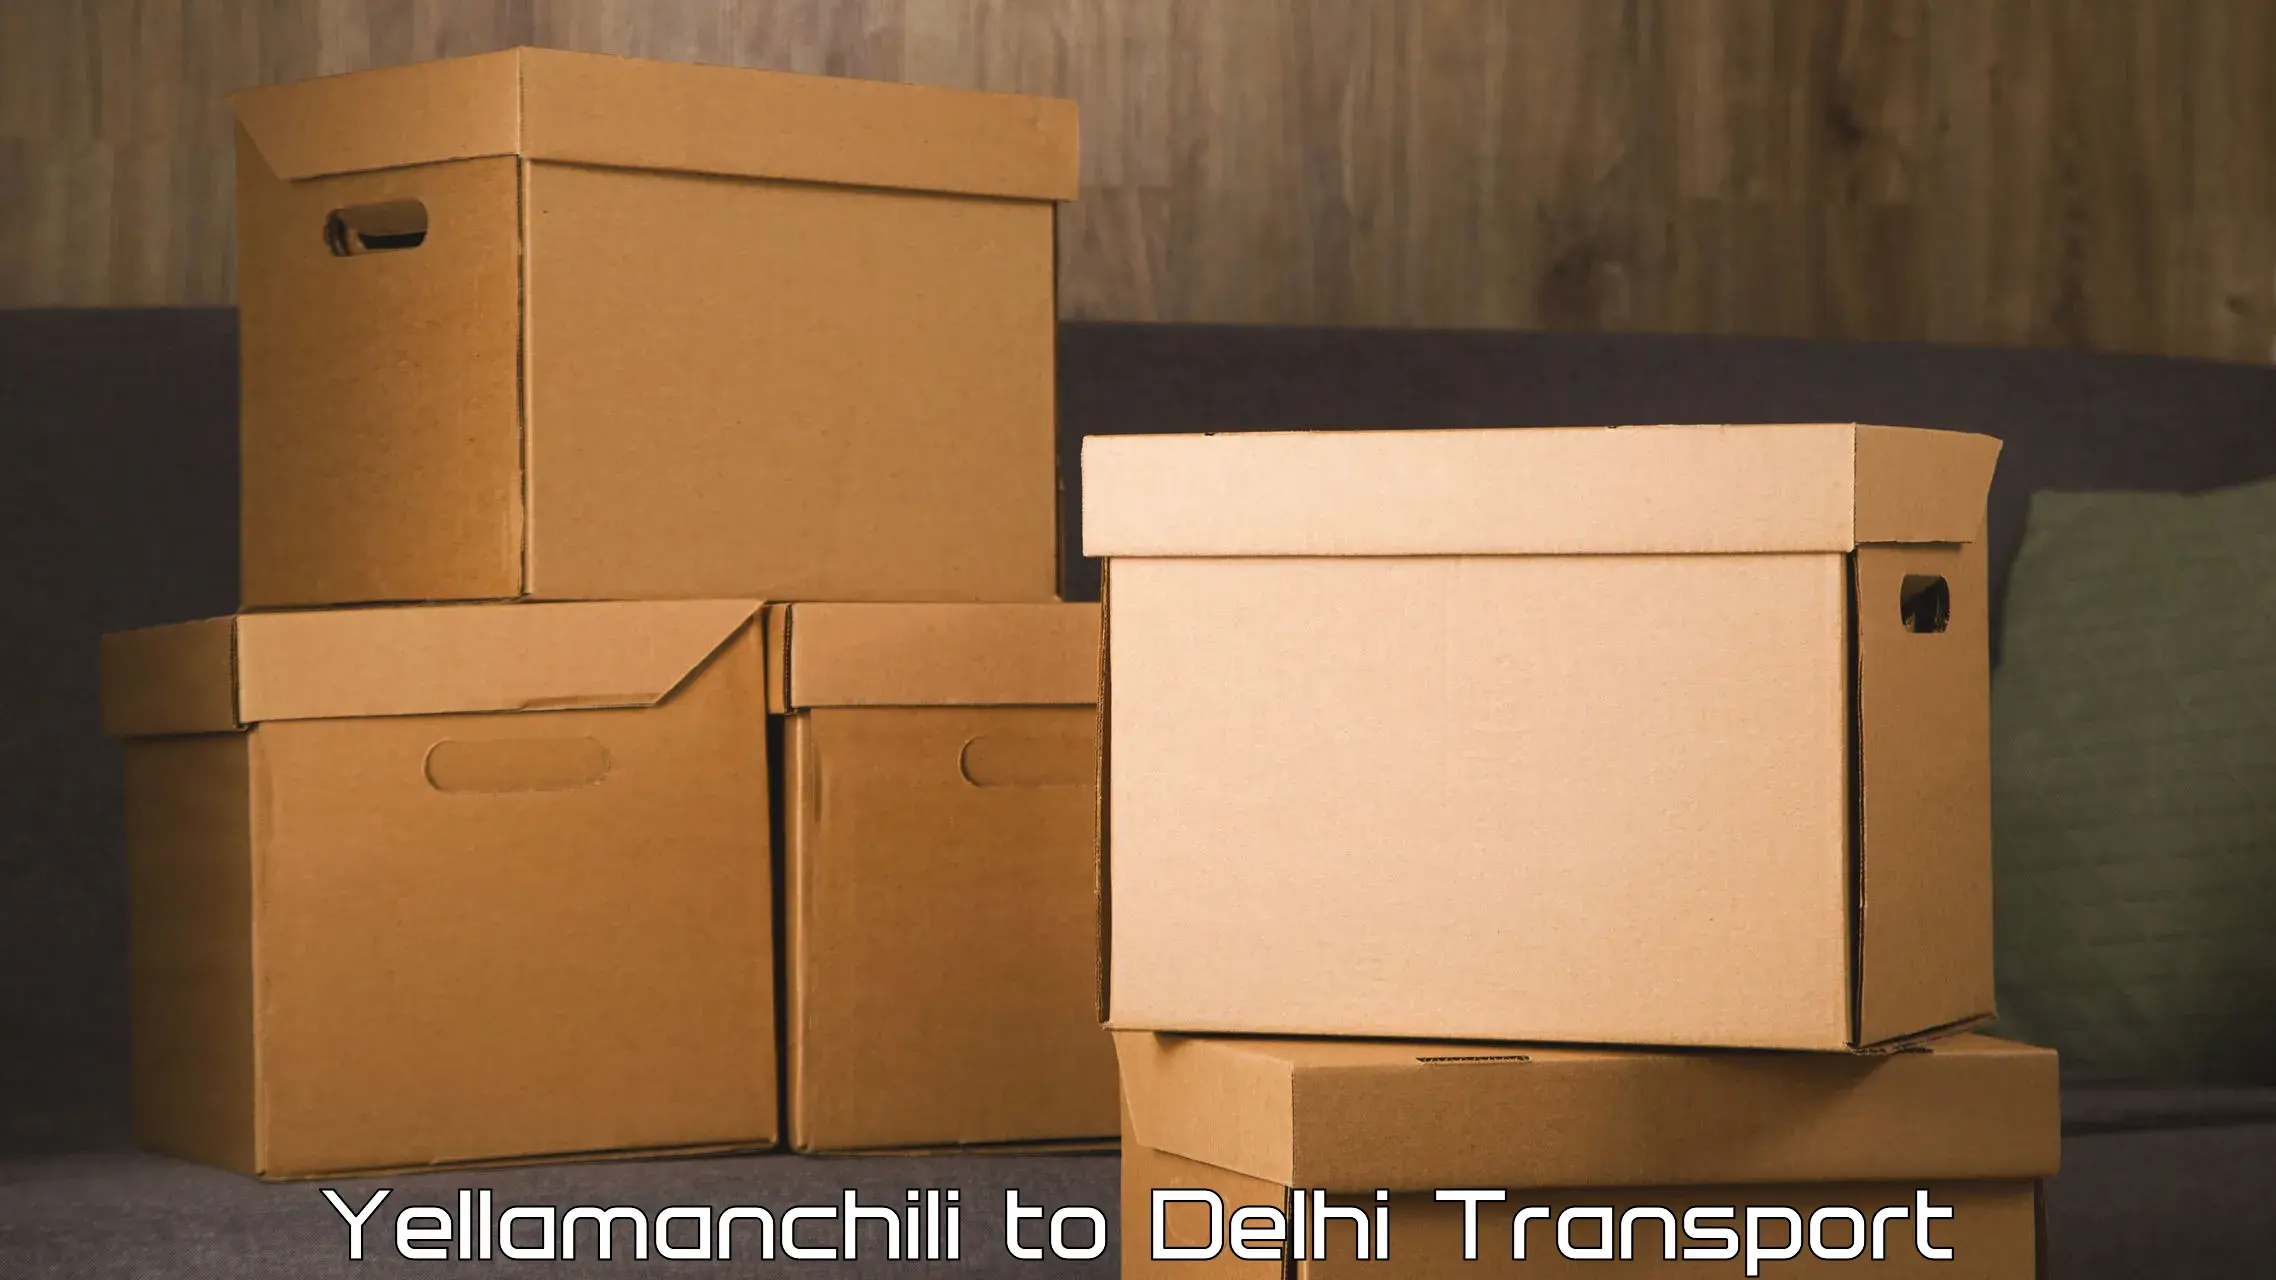 Container transport service Yellamanchili to Jawaharlal Nehru University New Delhi